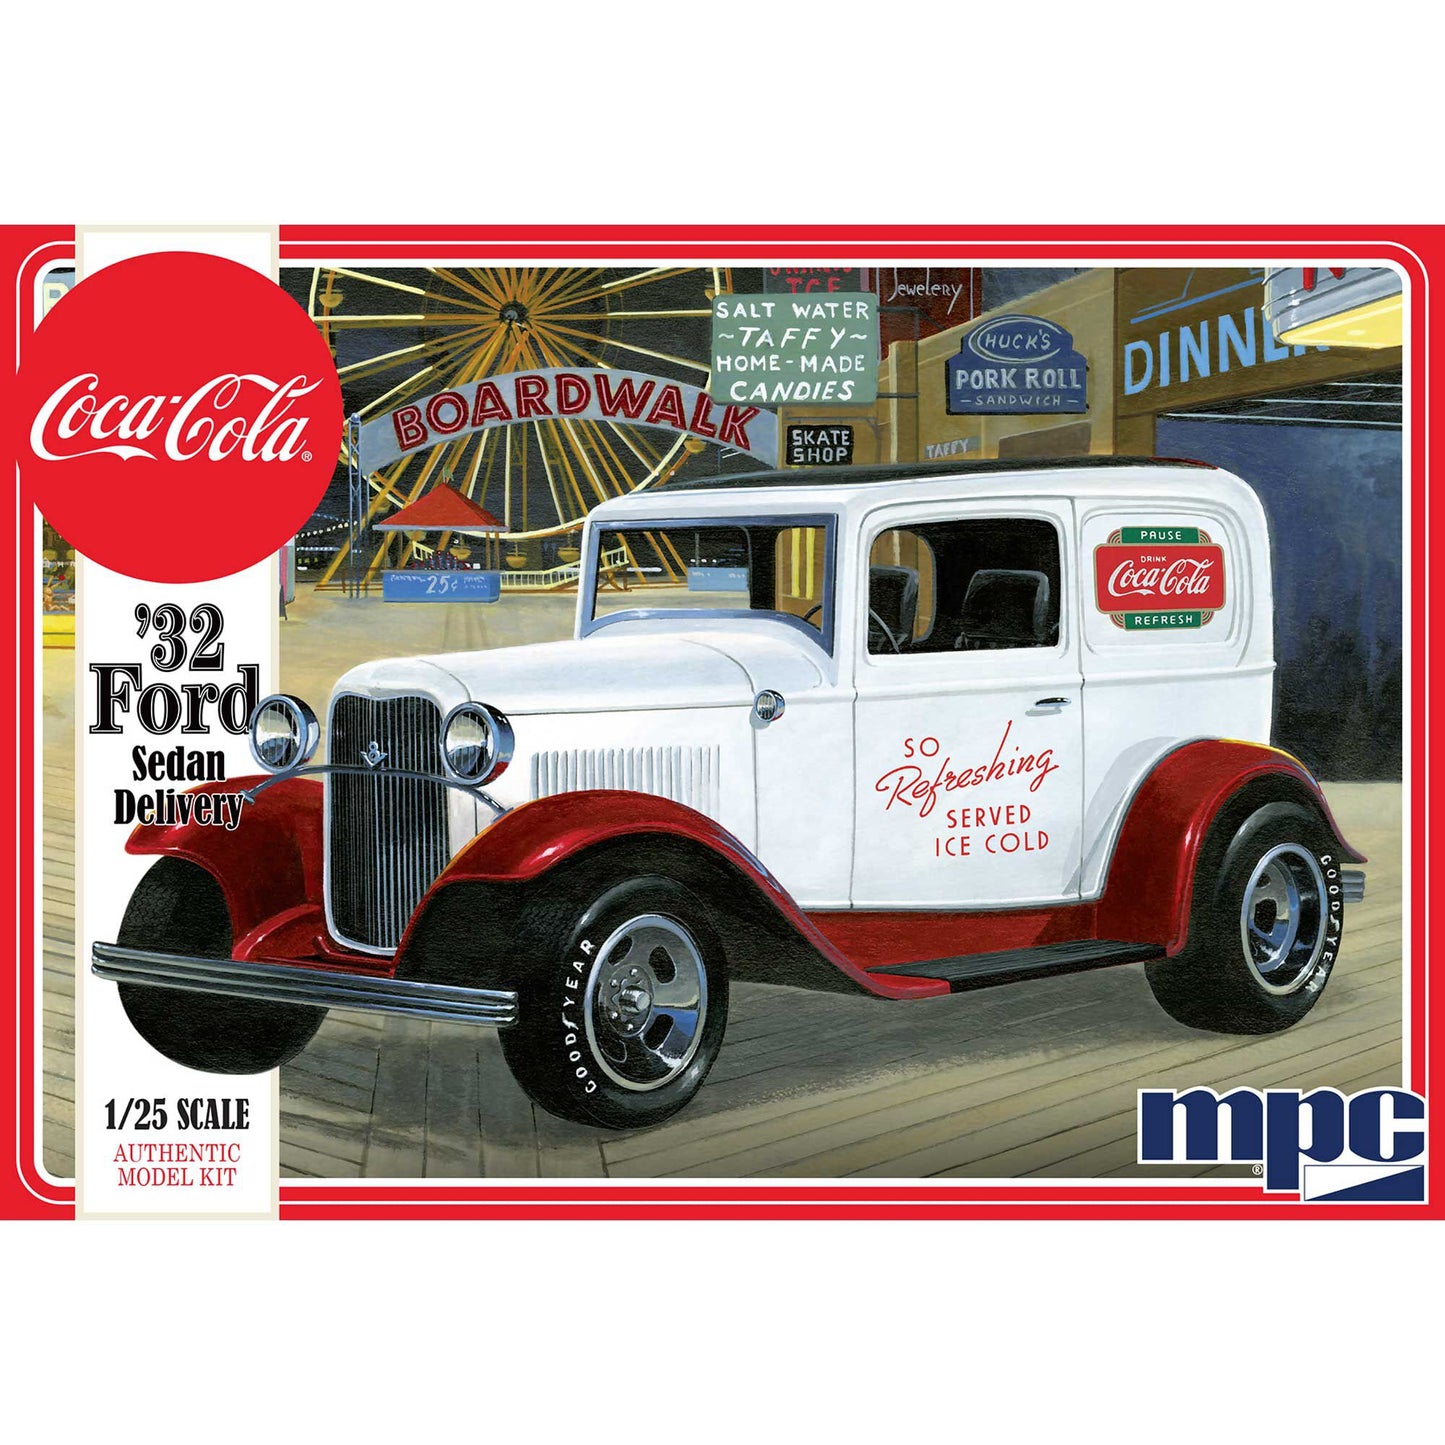 1/25 1932 Ford Sedan Delivery Truck, Coca-Cola